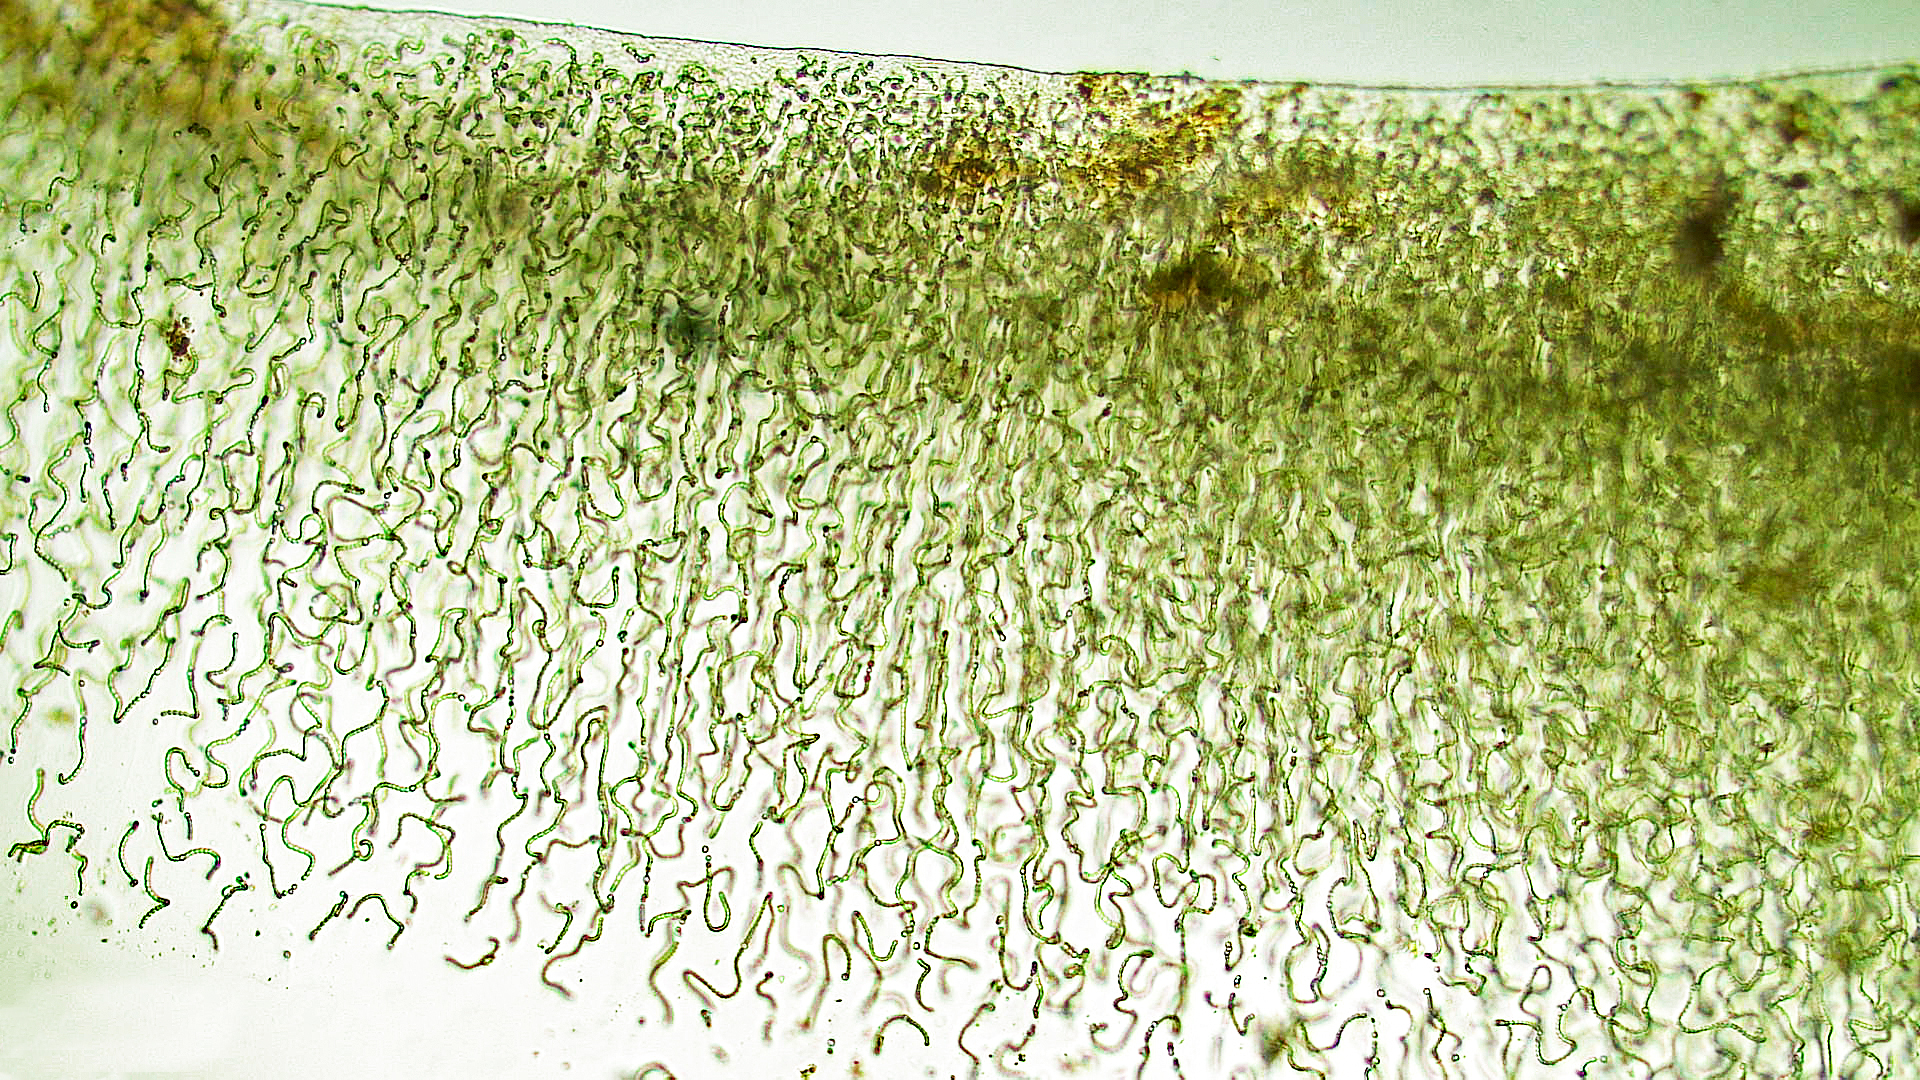 ././Cyanobacteria/Nostocales/Nostocaceae/Nostoc/pruniforme/nostoc-pruniforme-3.jpg